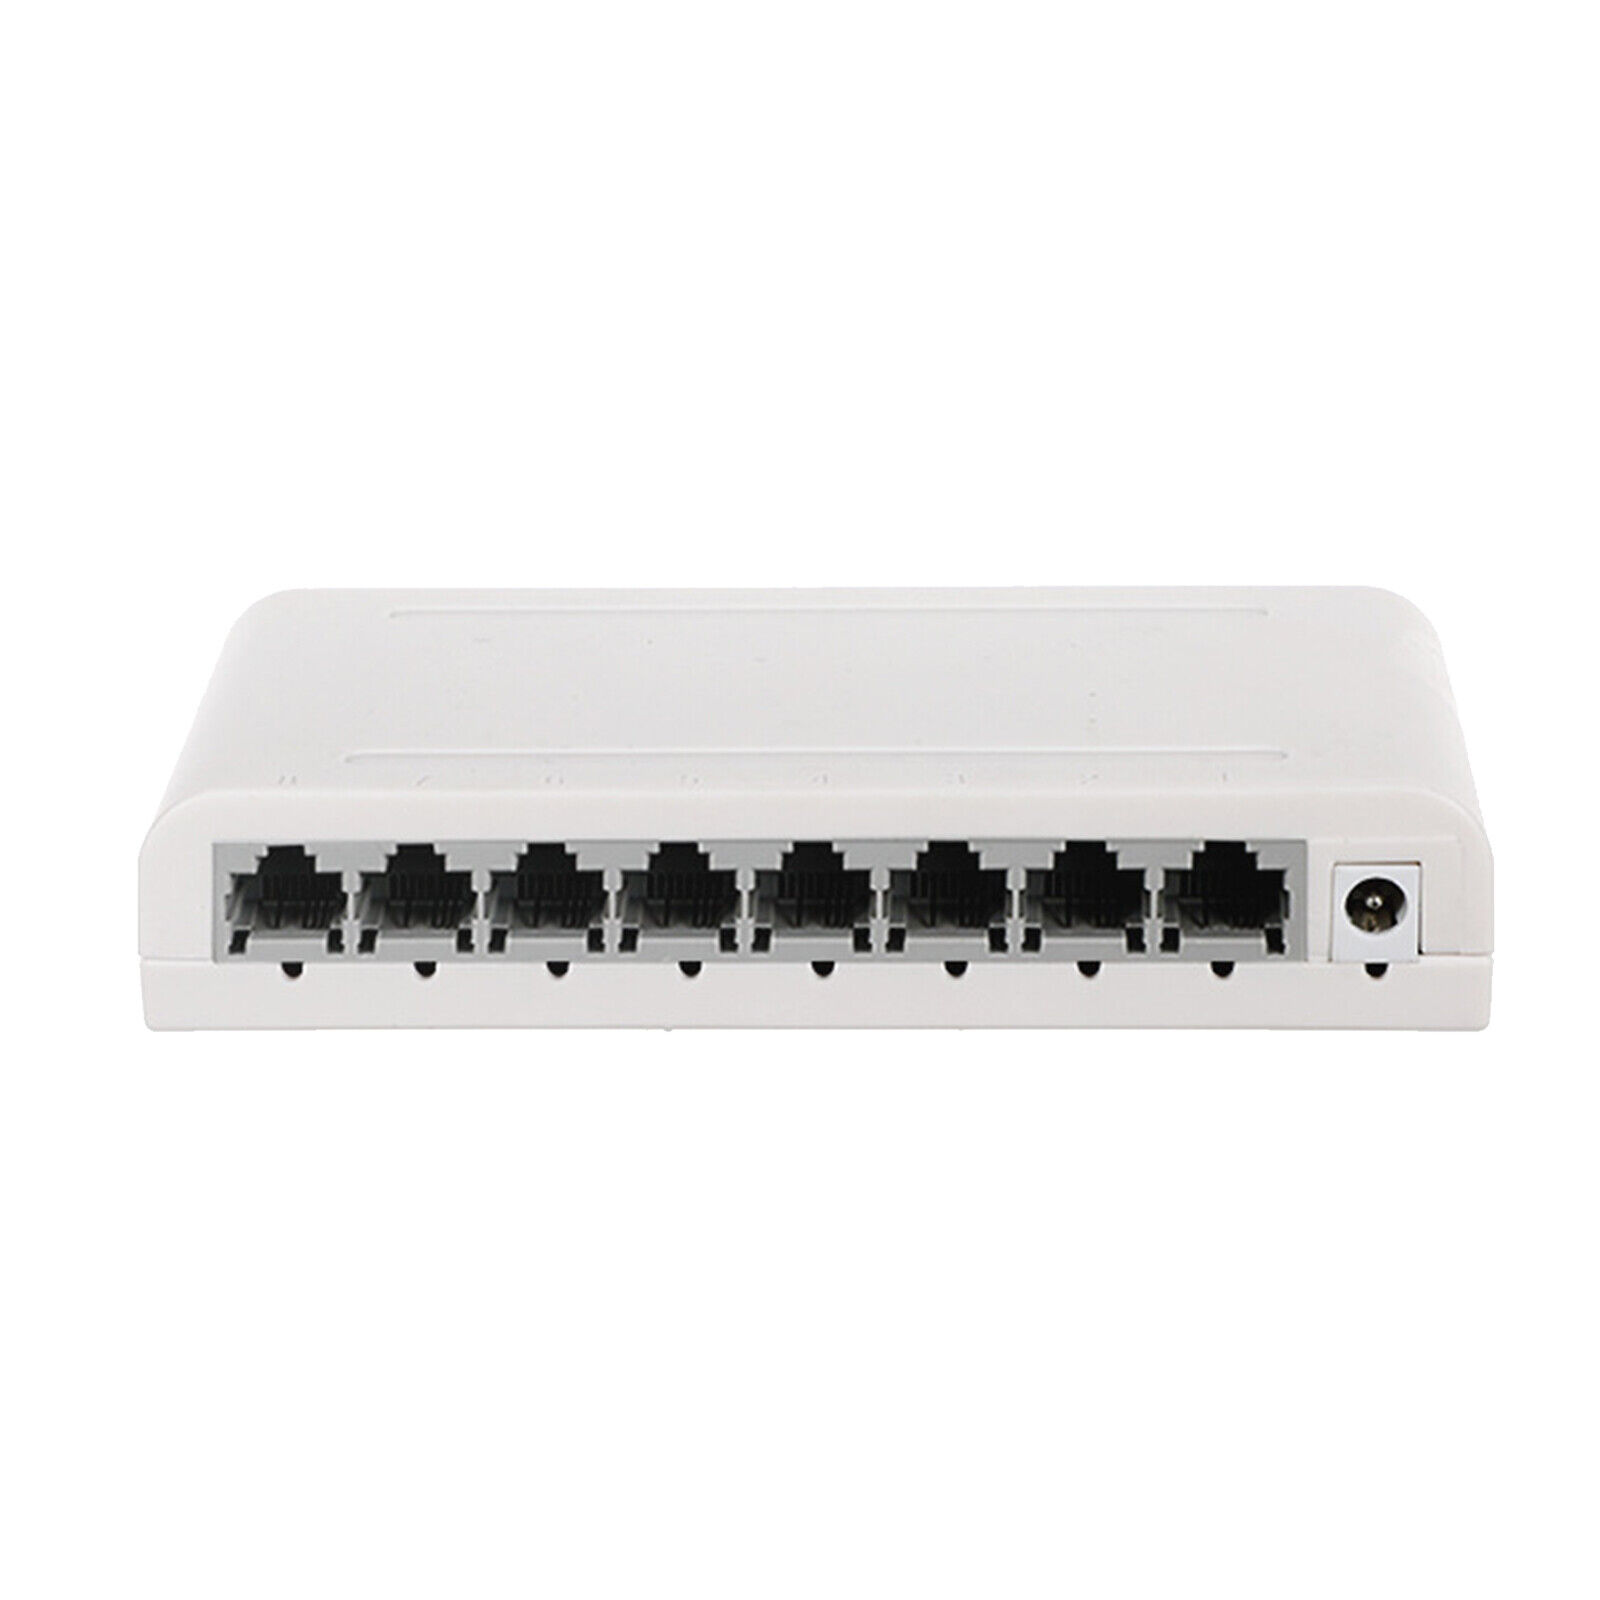 Dbit 8-Port 10/100Mbps Gigabit Ethernet Splitter Network Switch (1008G )